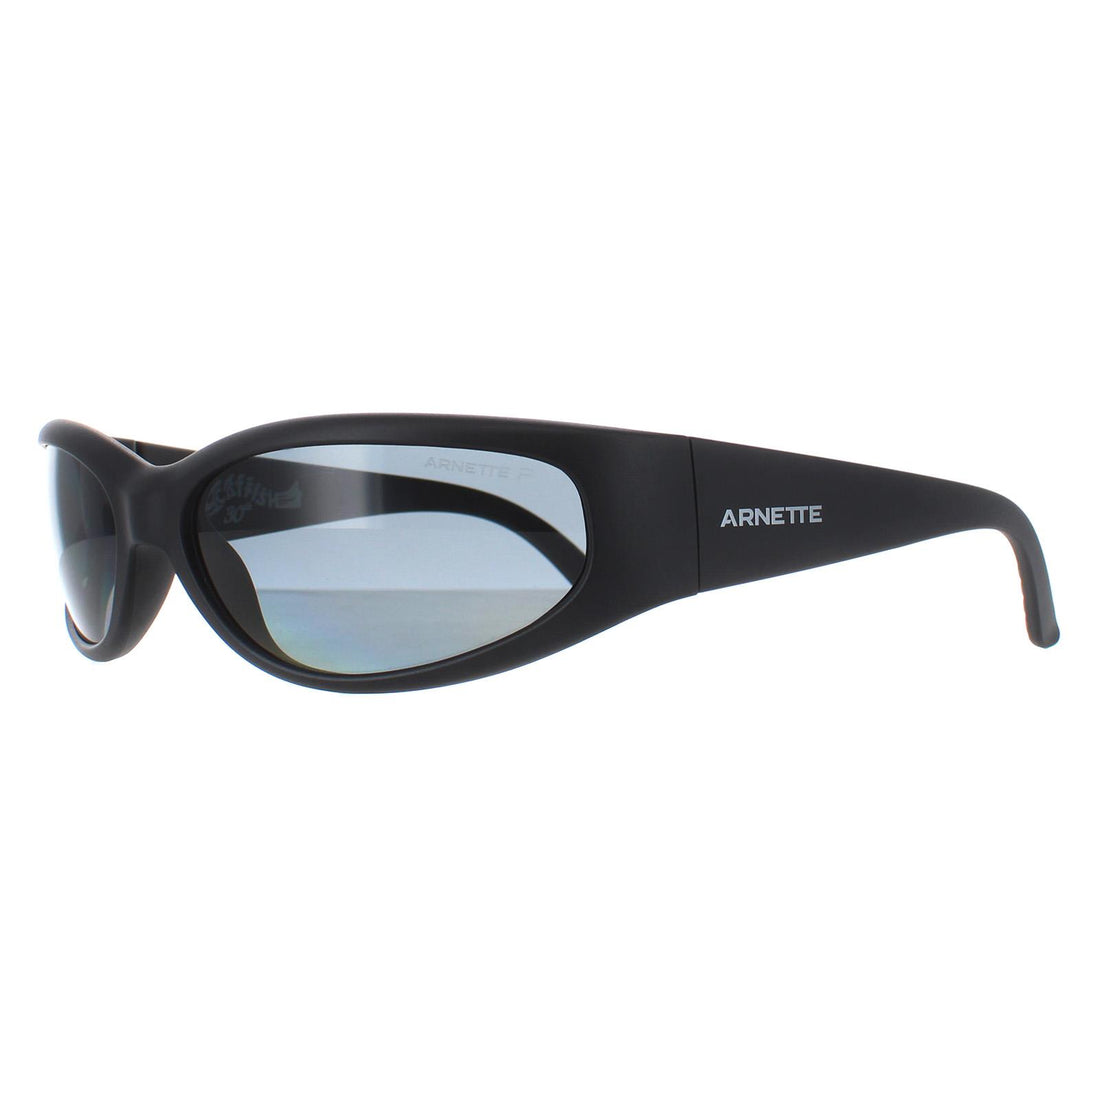 Arnette Grey Mirrror Browline Men's Sunglasses AN4281 12116G 56 -  Walmart.com